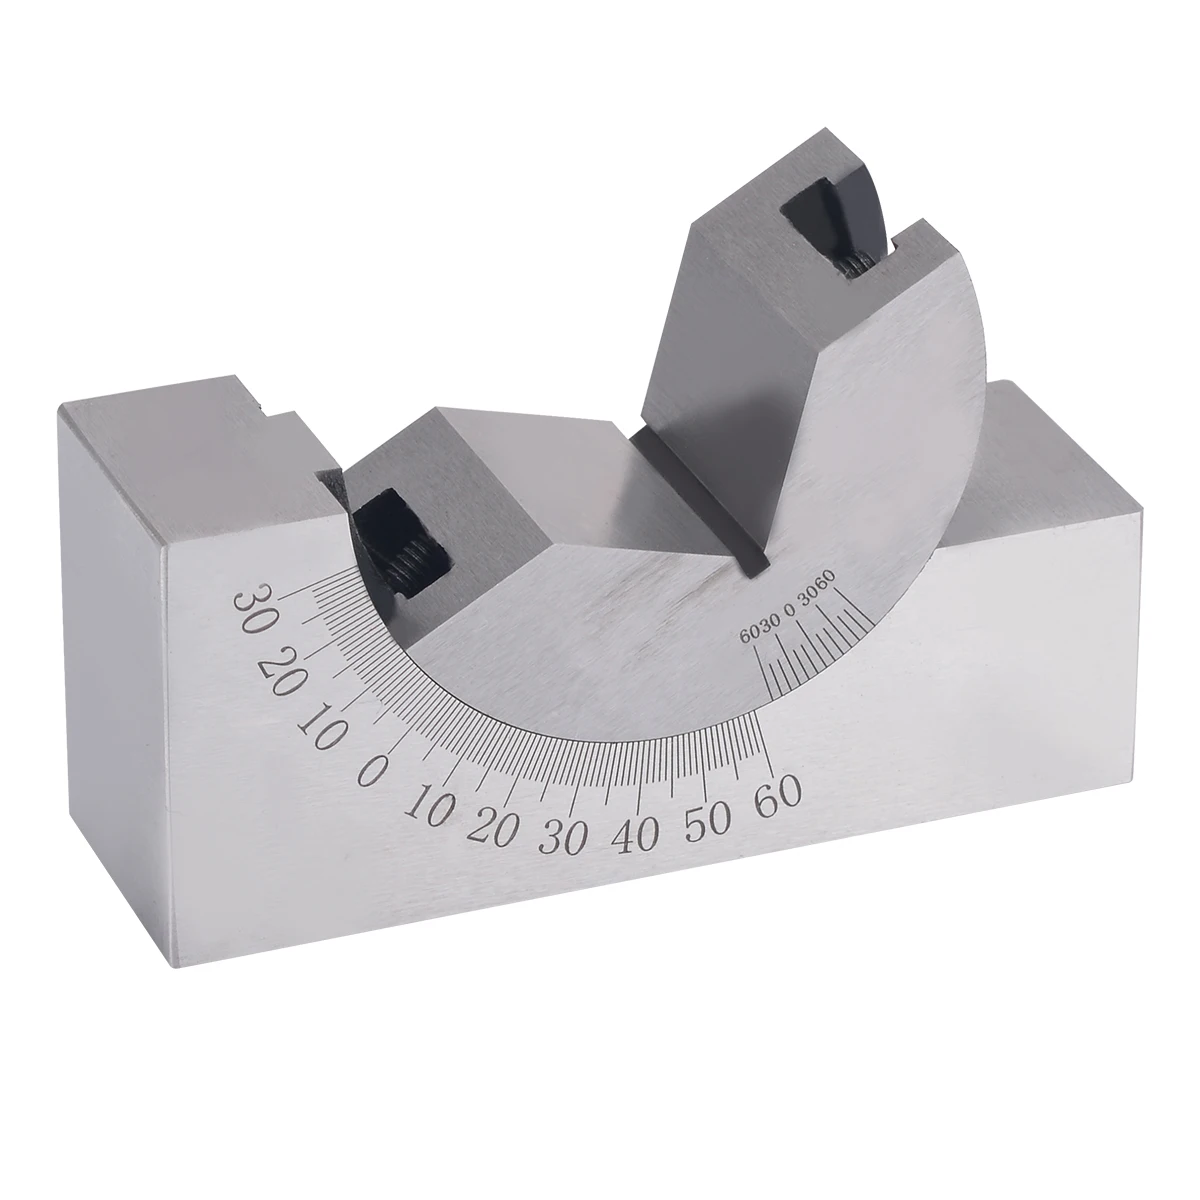 Precision Gauge 0-60° Angle V Block Milling Grinder Driller Tool 75x25x36mm 